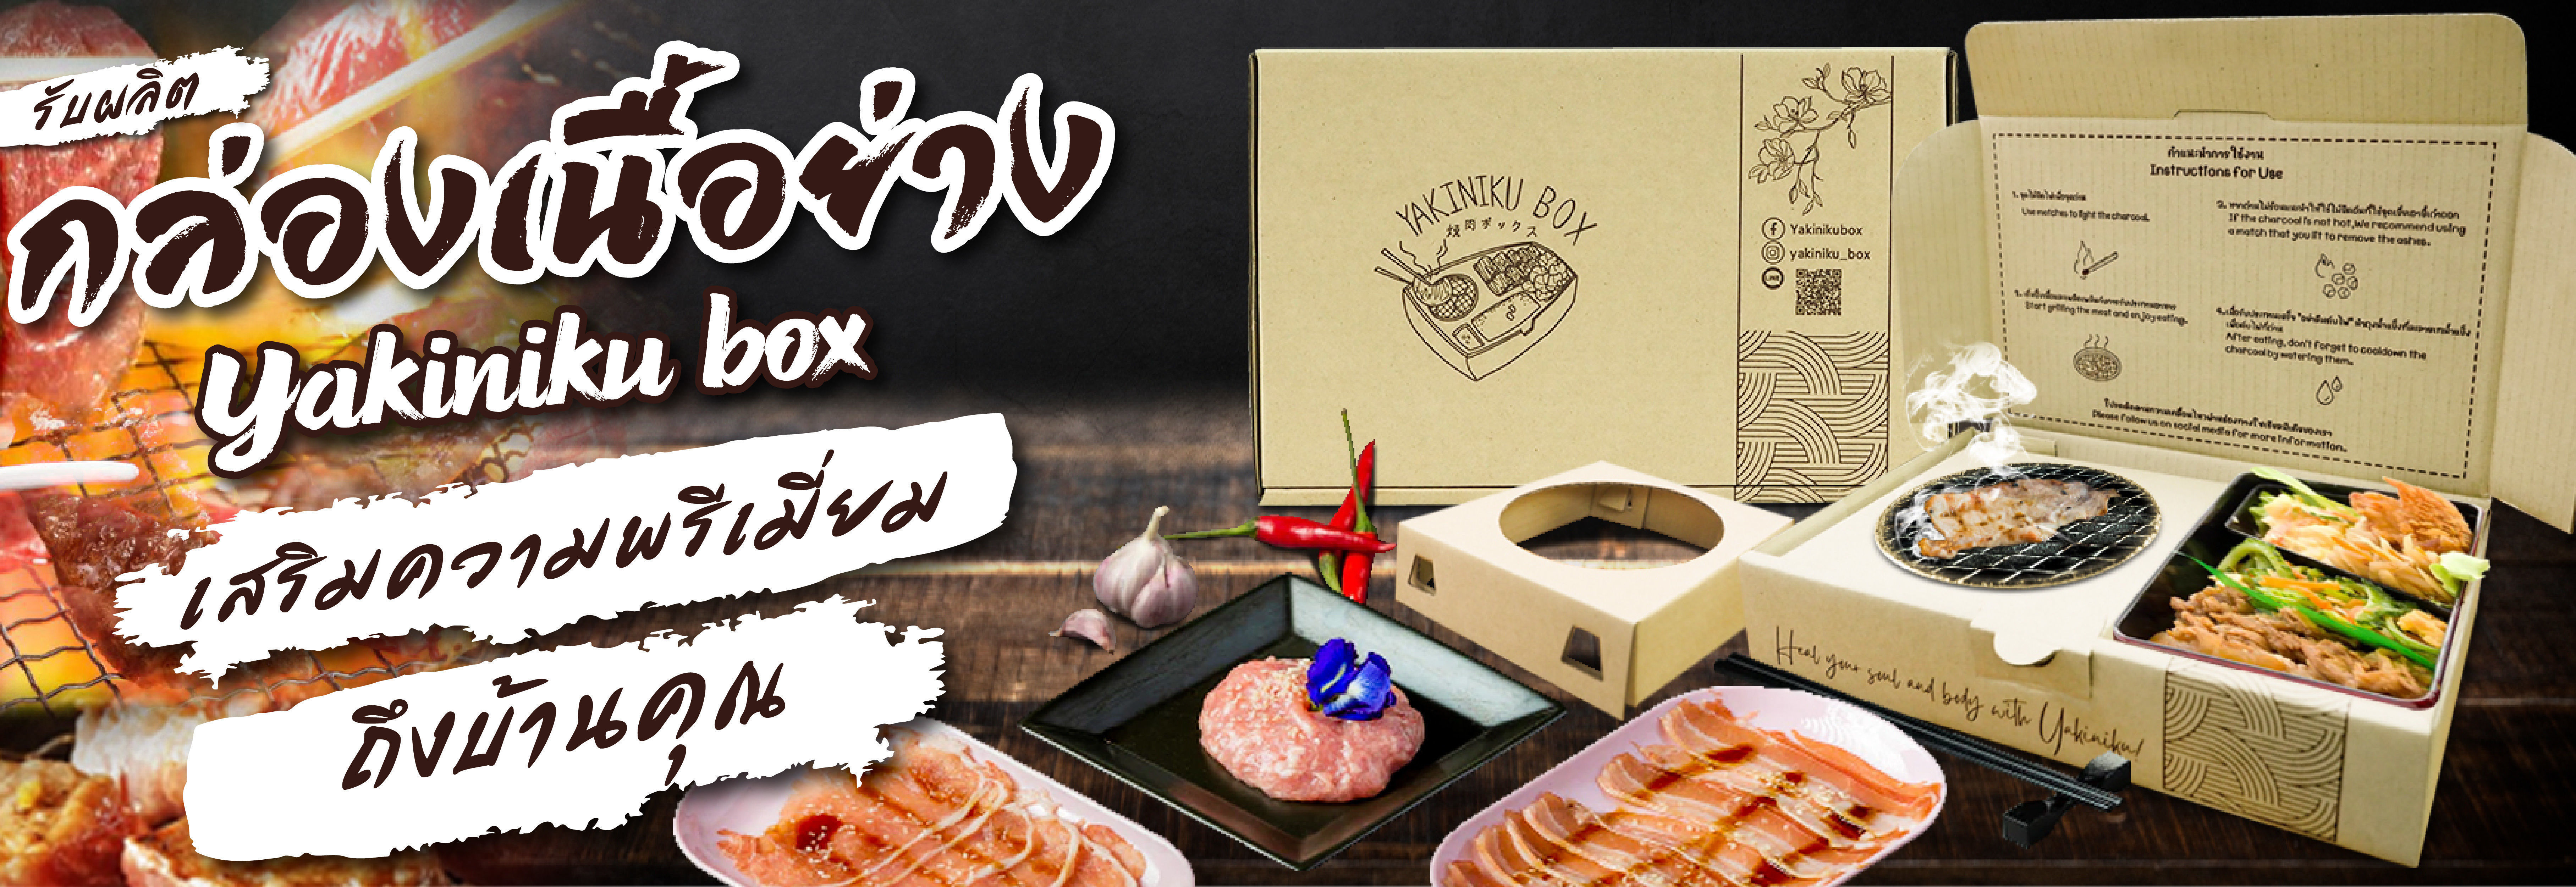 กล่องเนื้อย่างเกาหลี Yakiniku Box กล่องกระดาษใส่อาหาร Delivery | KASBOX - โรงงานผลิตกล่องกระดาษลูกฟู